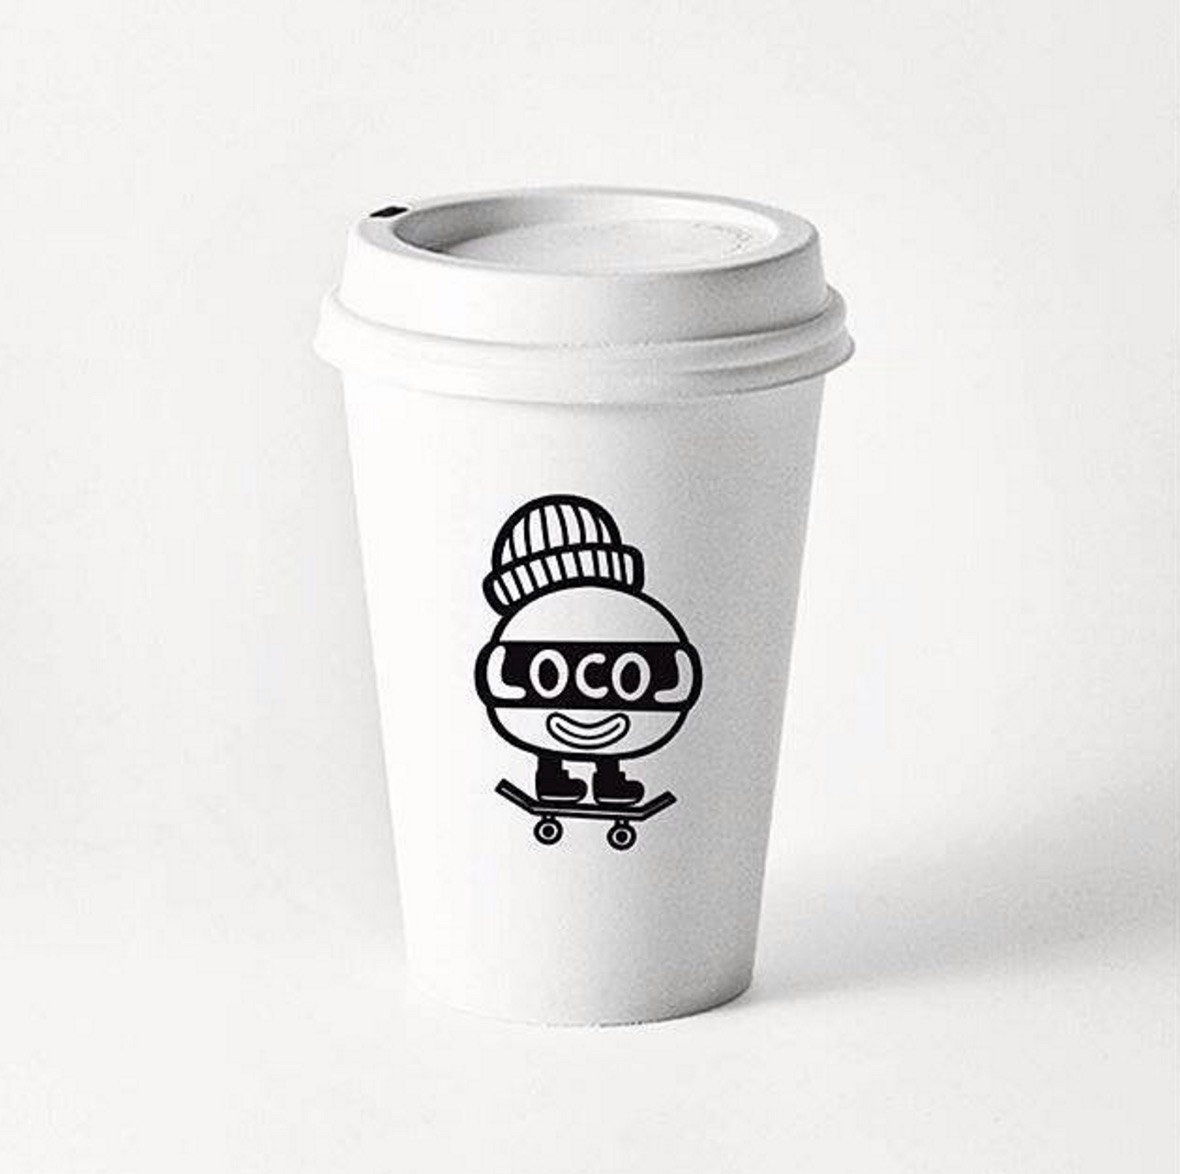 LocoL Coffee Cup